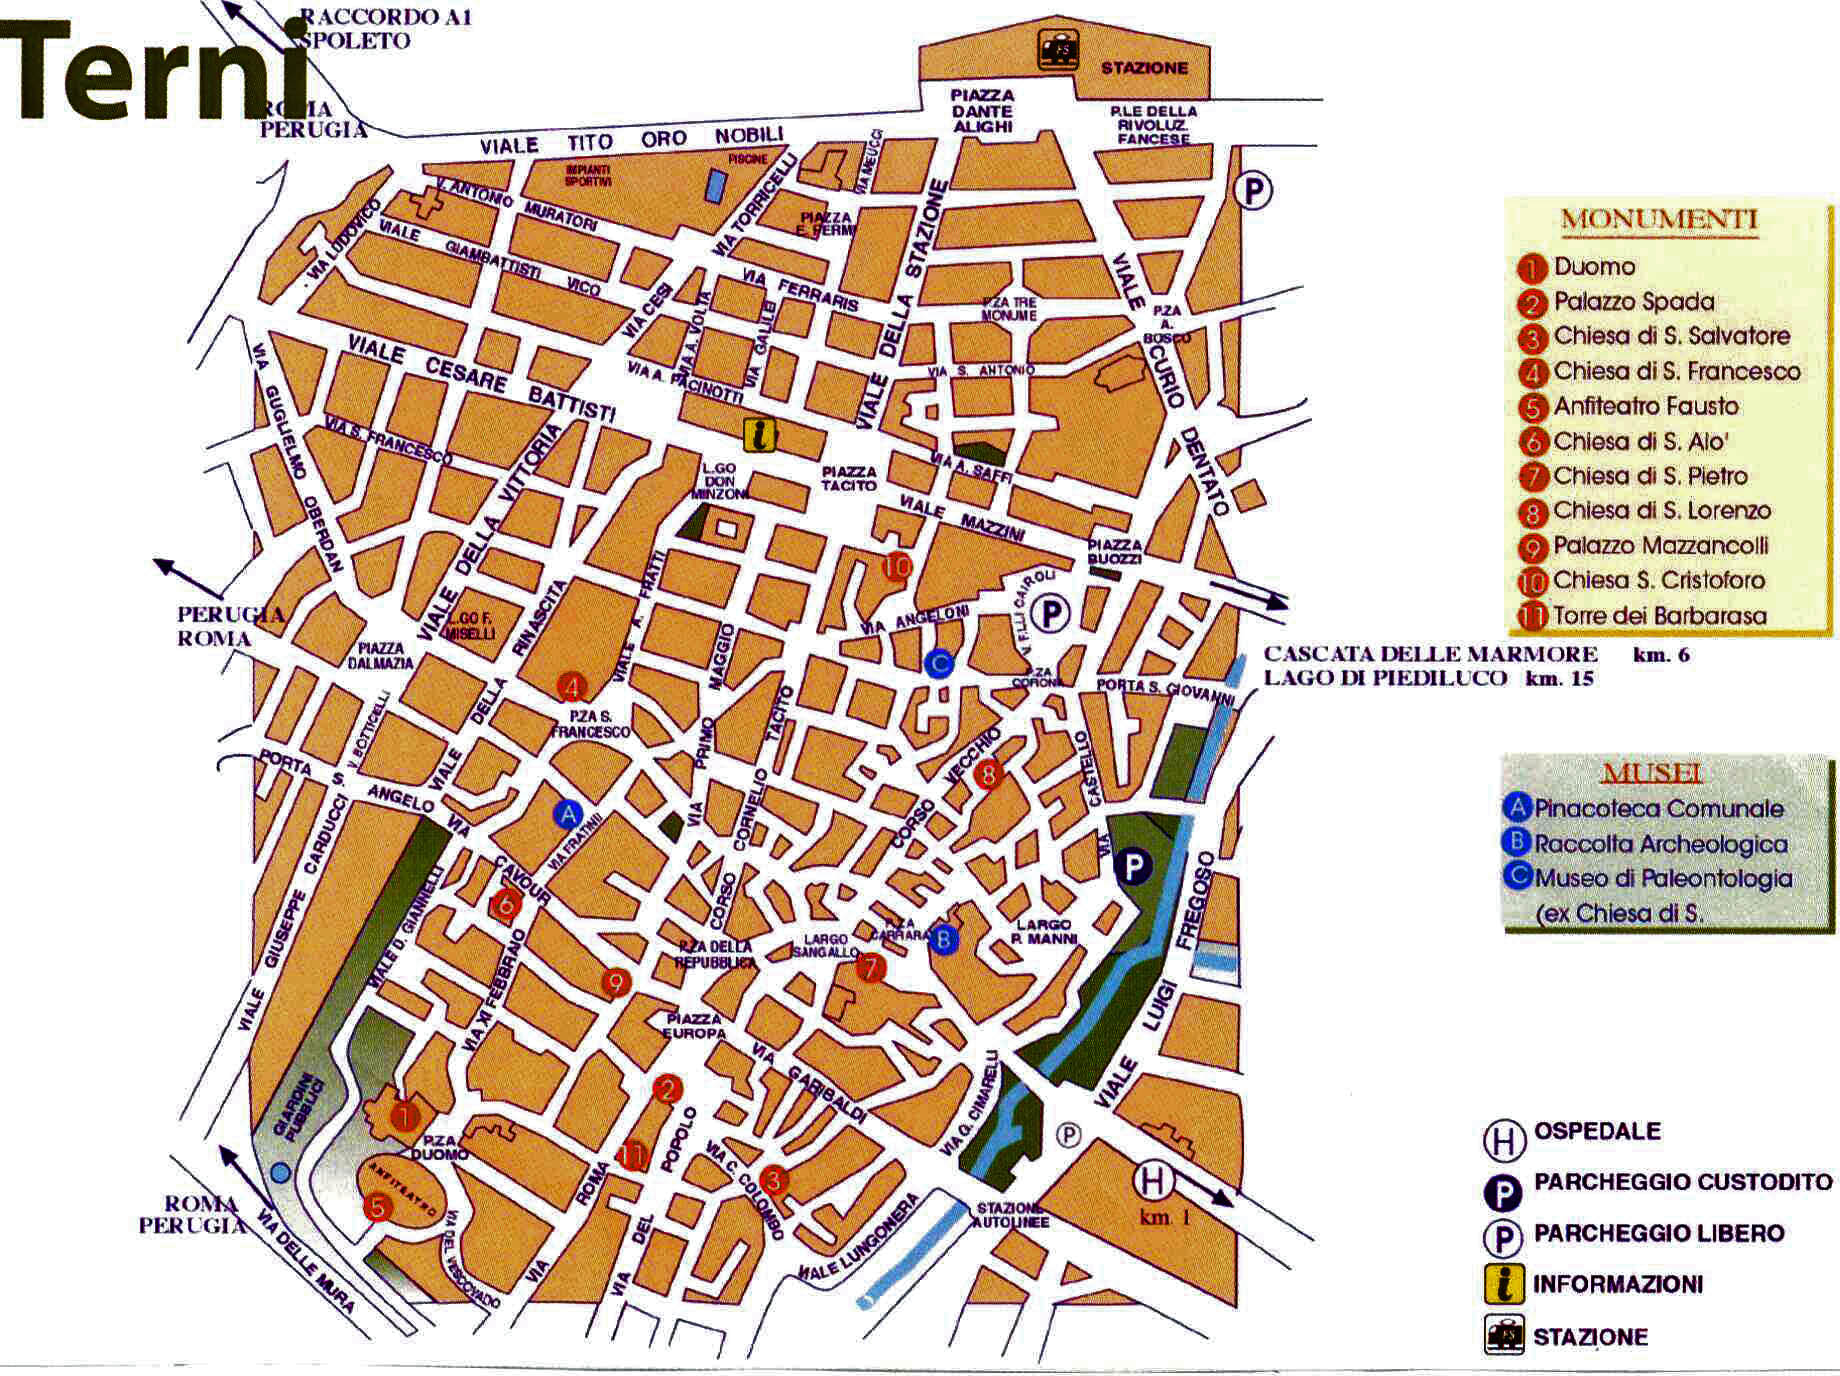 Terni downtown map